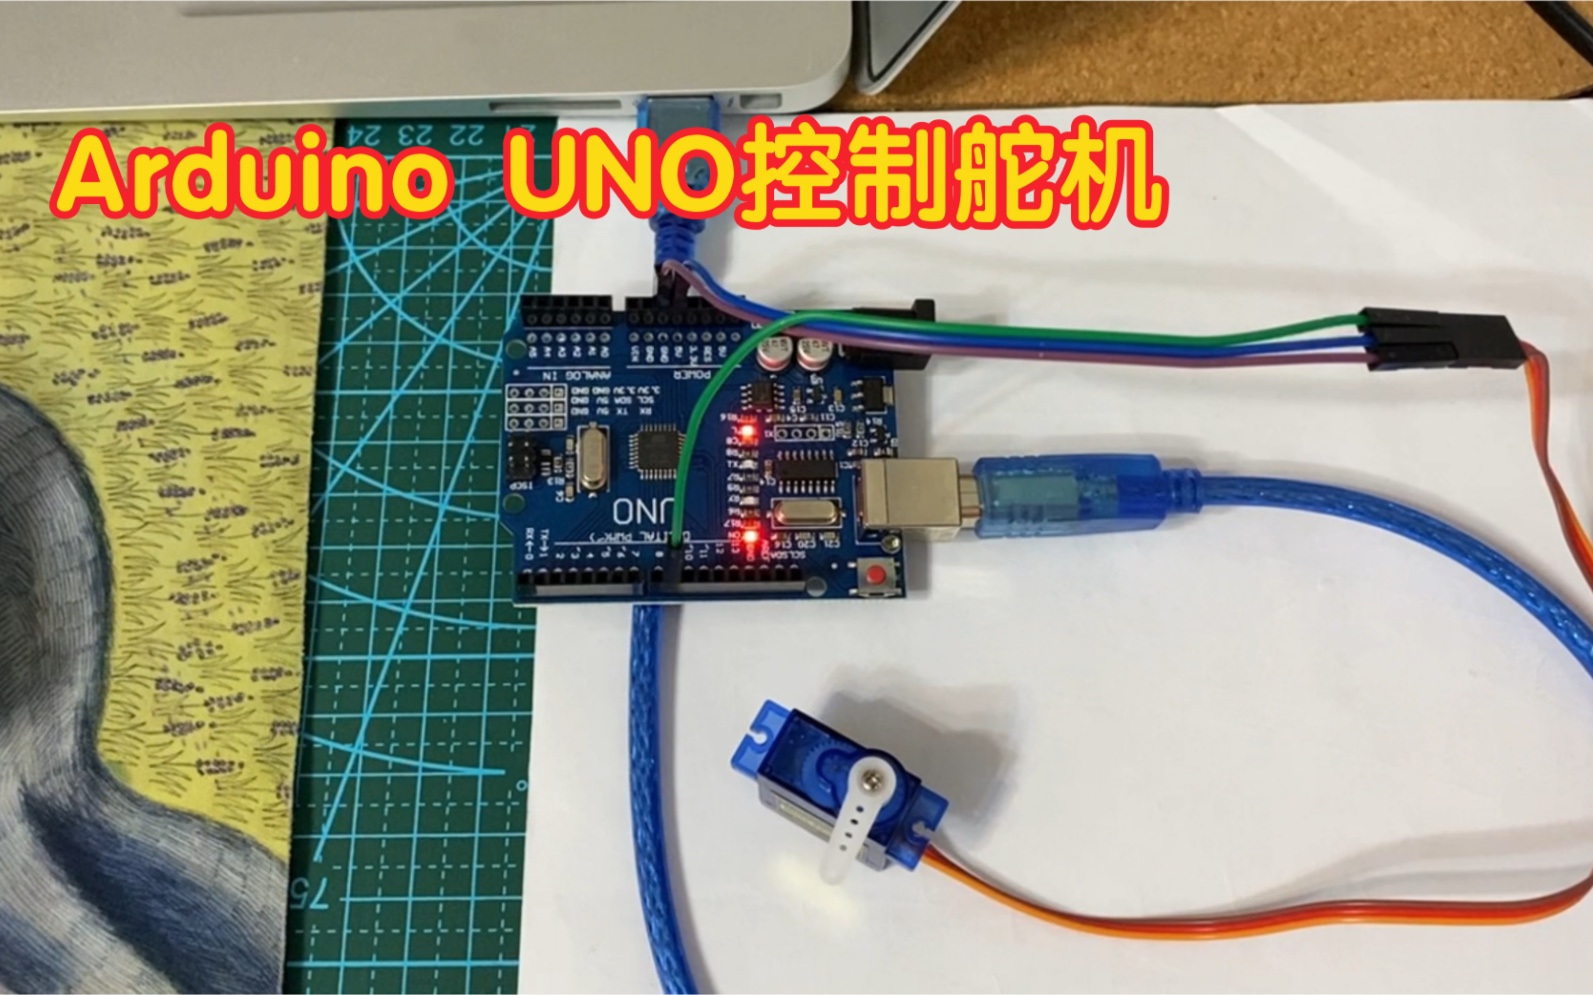 看看怎么用Arduino UNO来控制舵机。